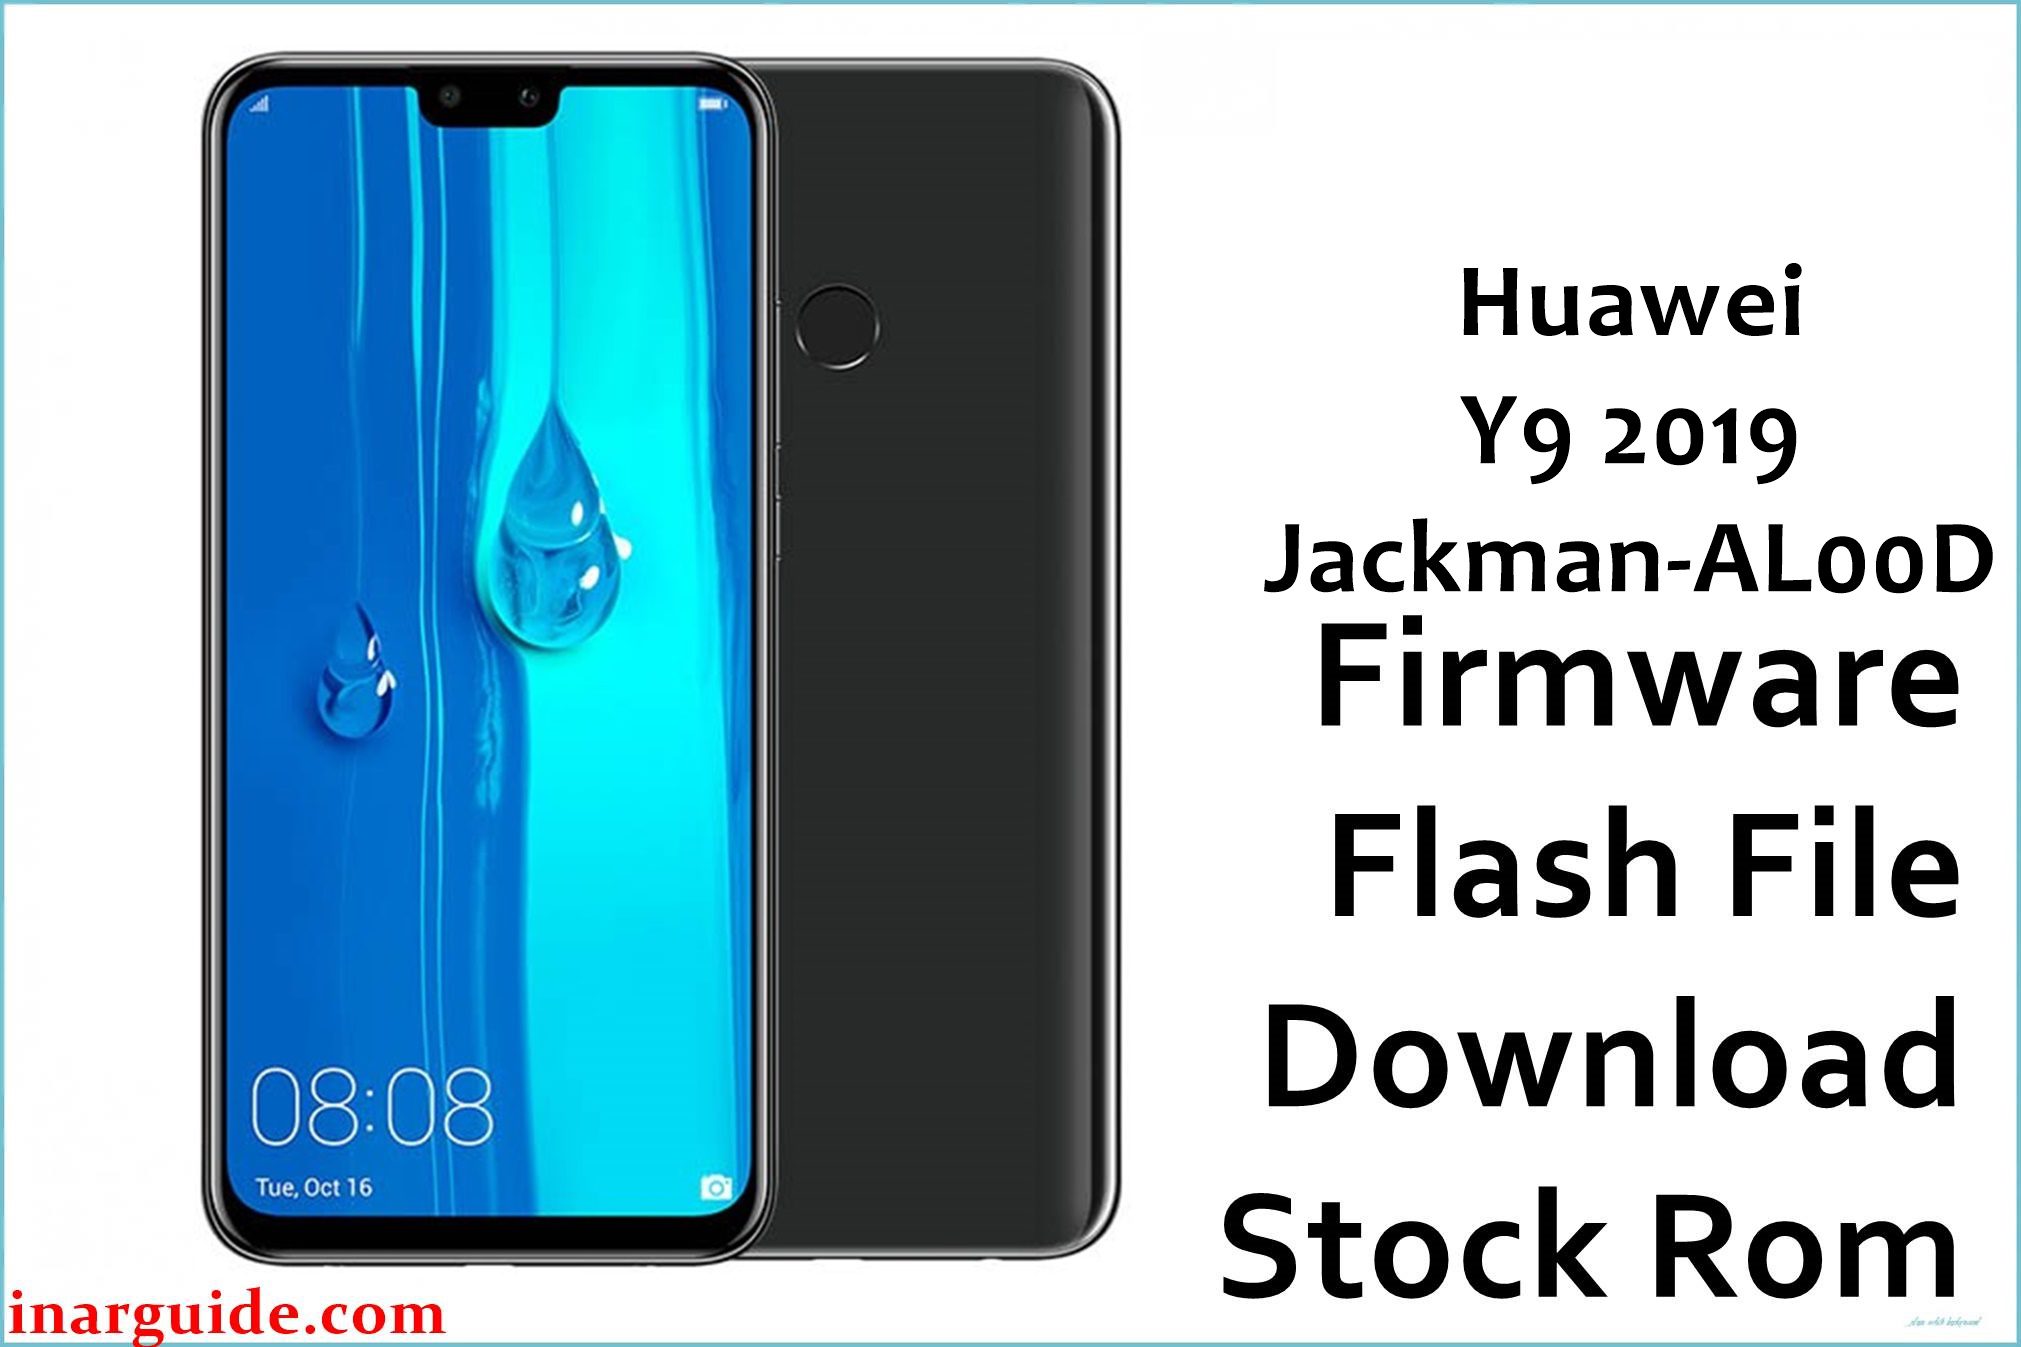 Huawei Y9 2019 Jackman AL00D